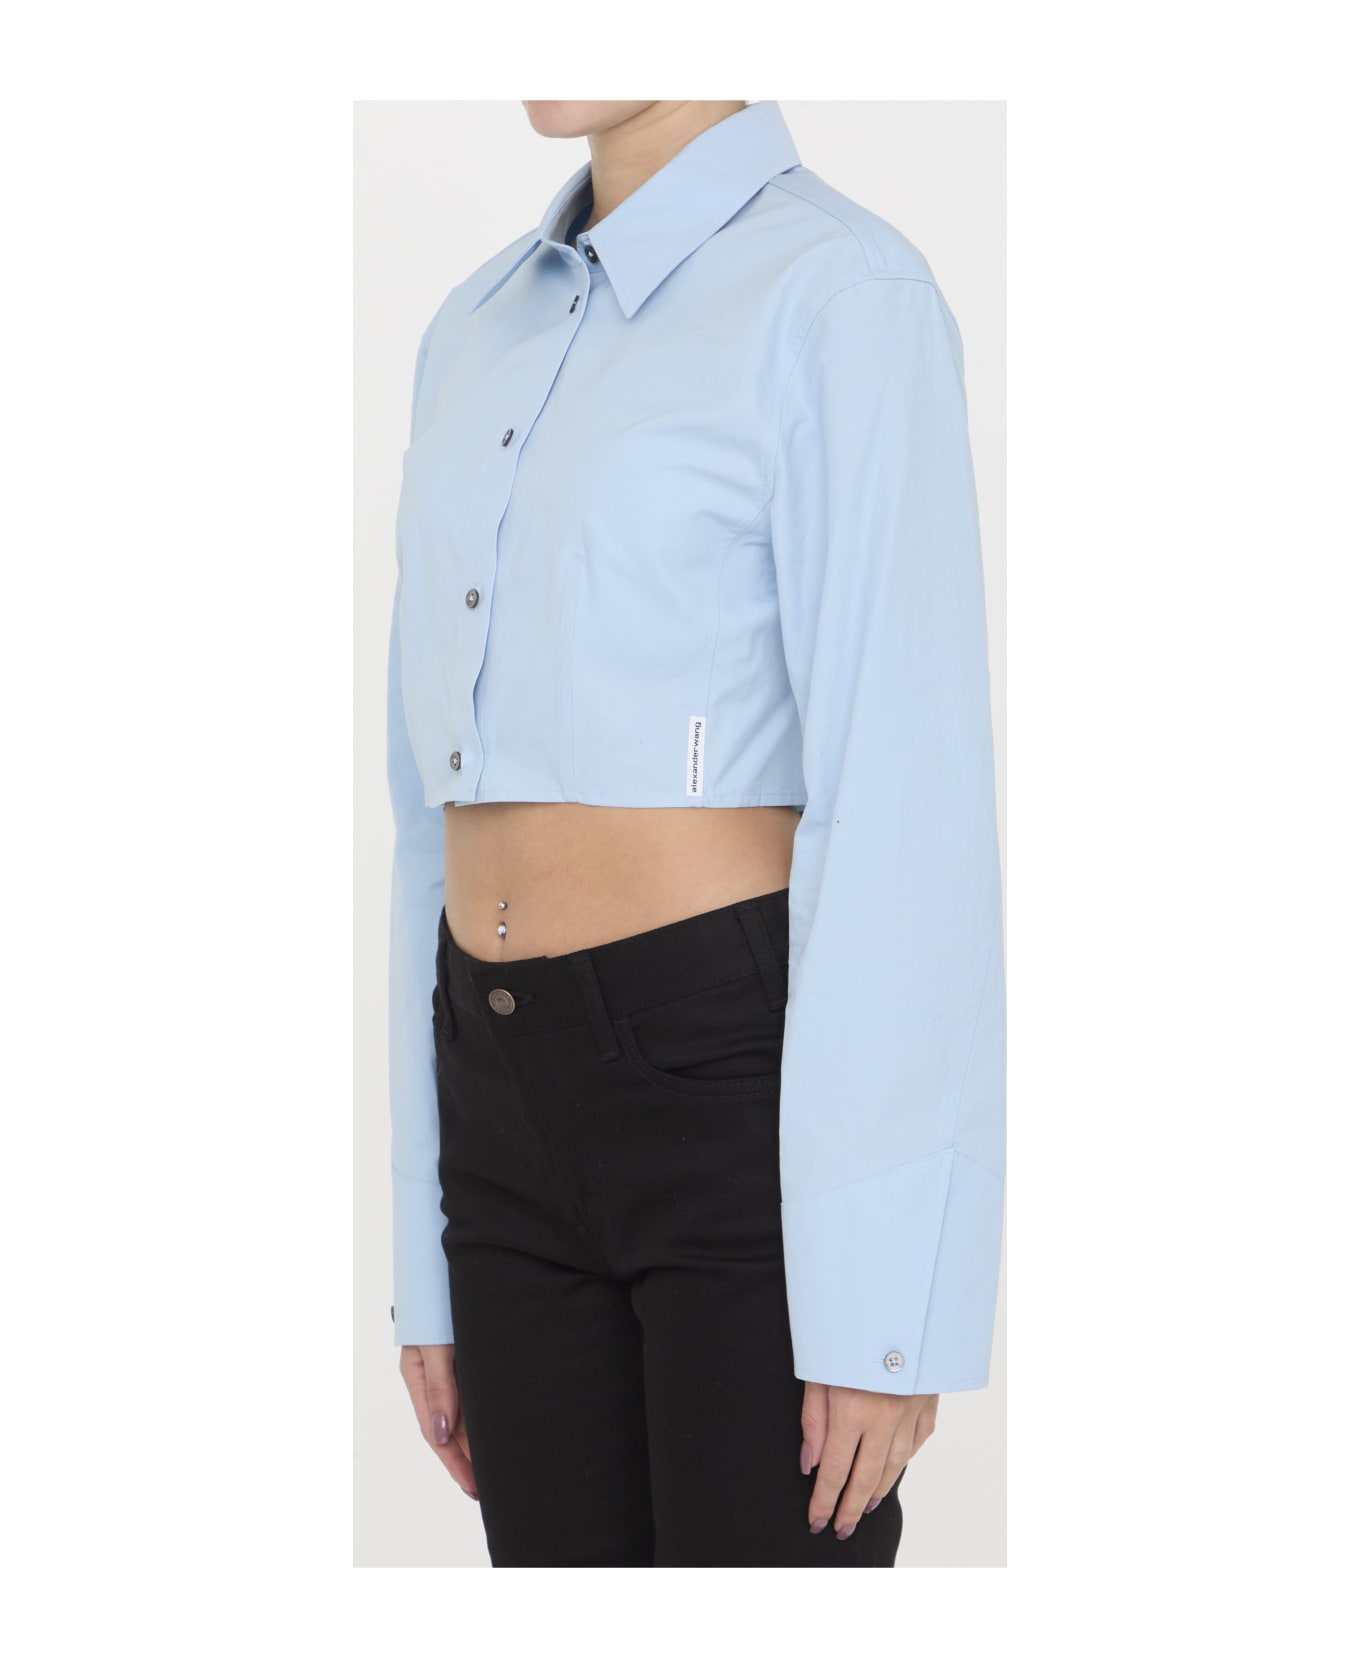 Alexander Wang Cropped Structured Shirt - LIGHT BLUE